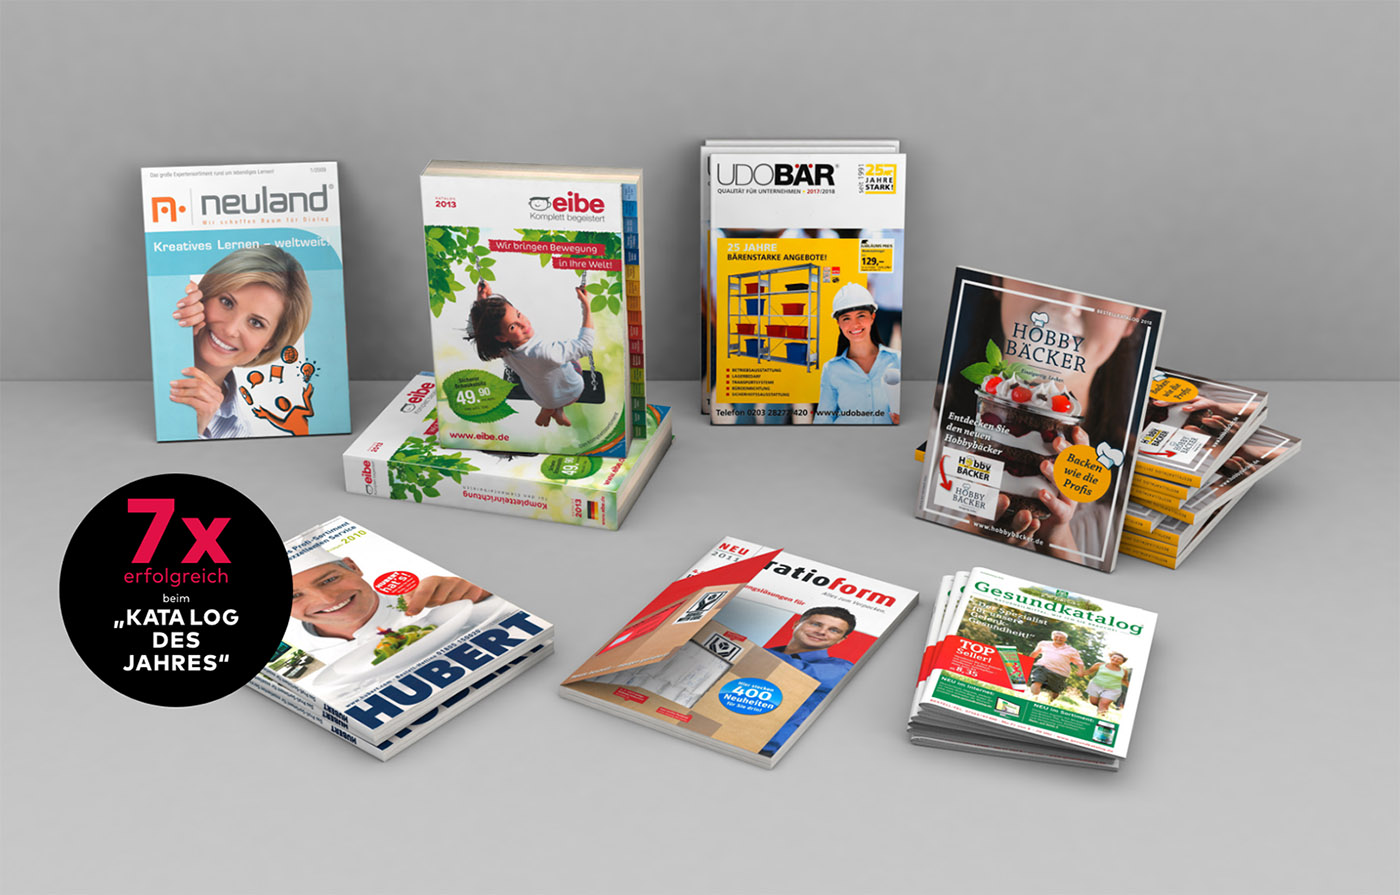 Die sieben Kataloge des Jahres von Riegg Markenkommunikation: Hobbybäcker, Gesundkatalog, ratioform, Hubert, neuland, eibe, Udo Bär